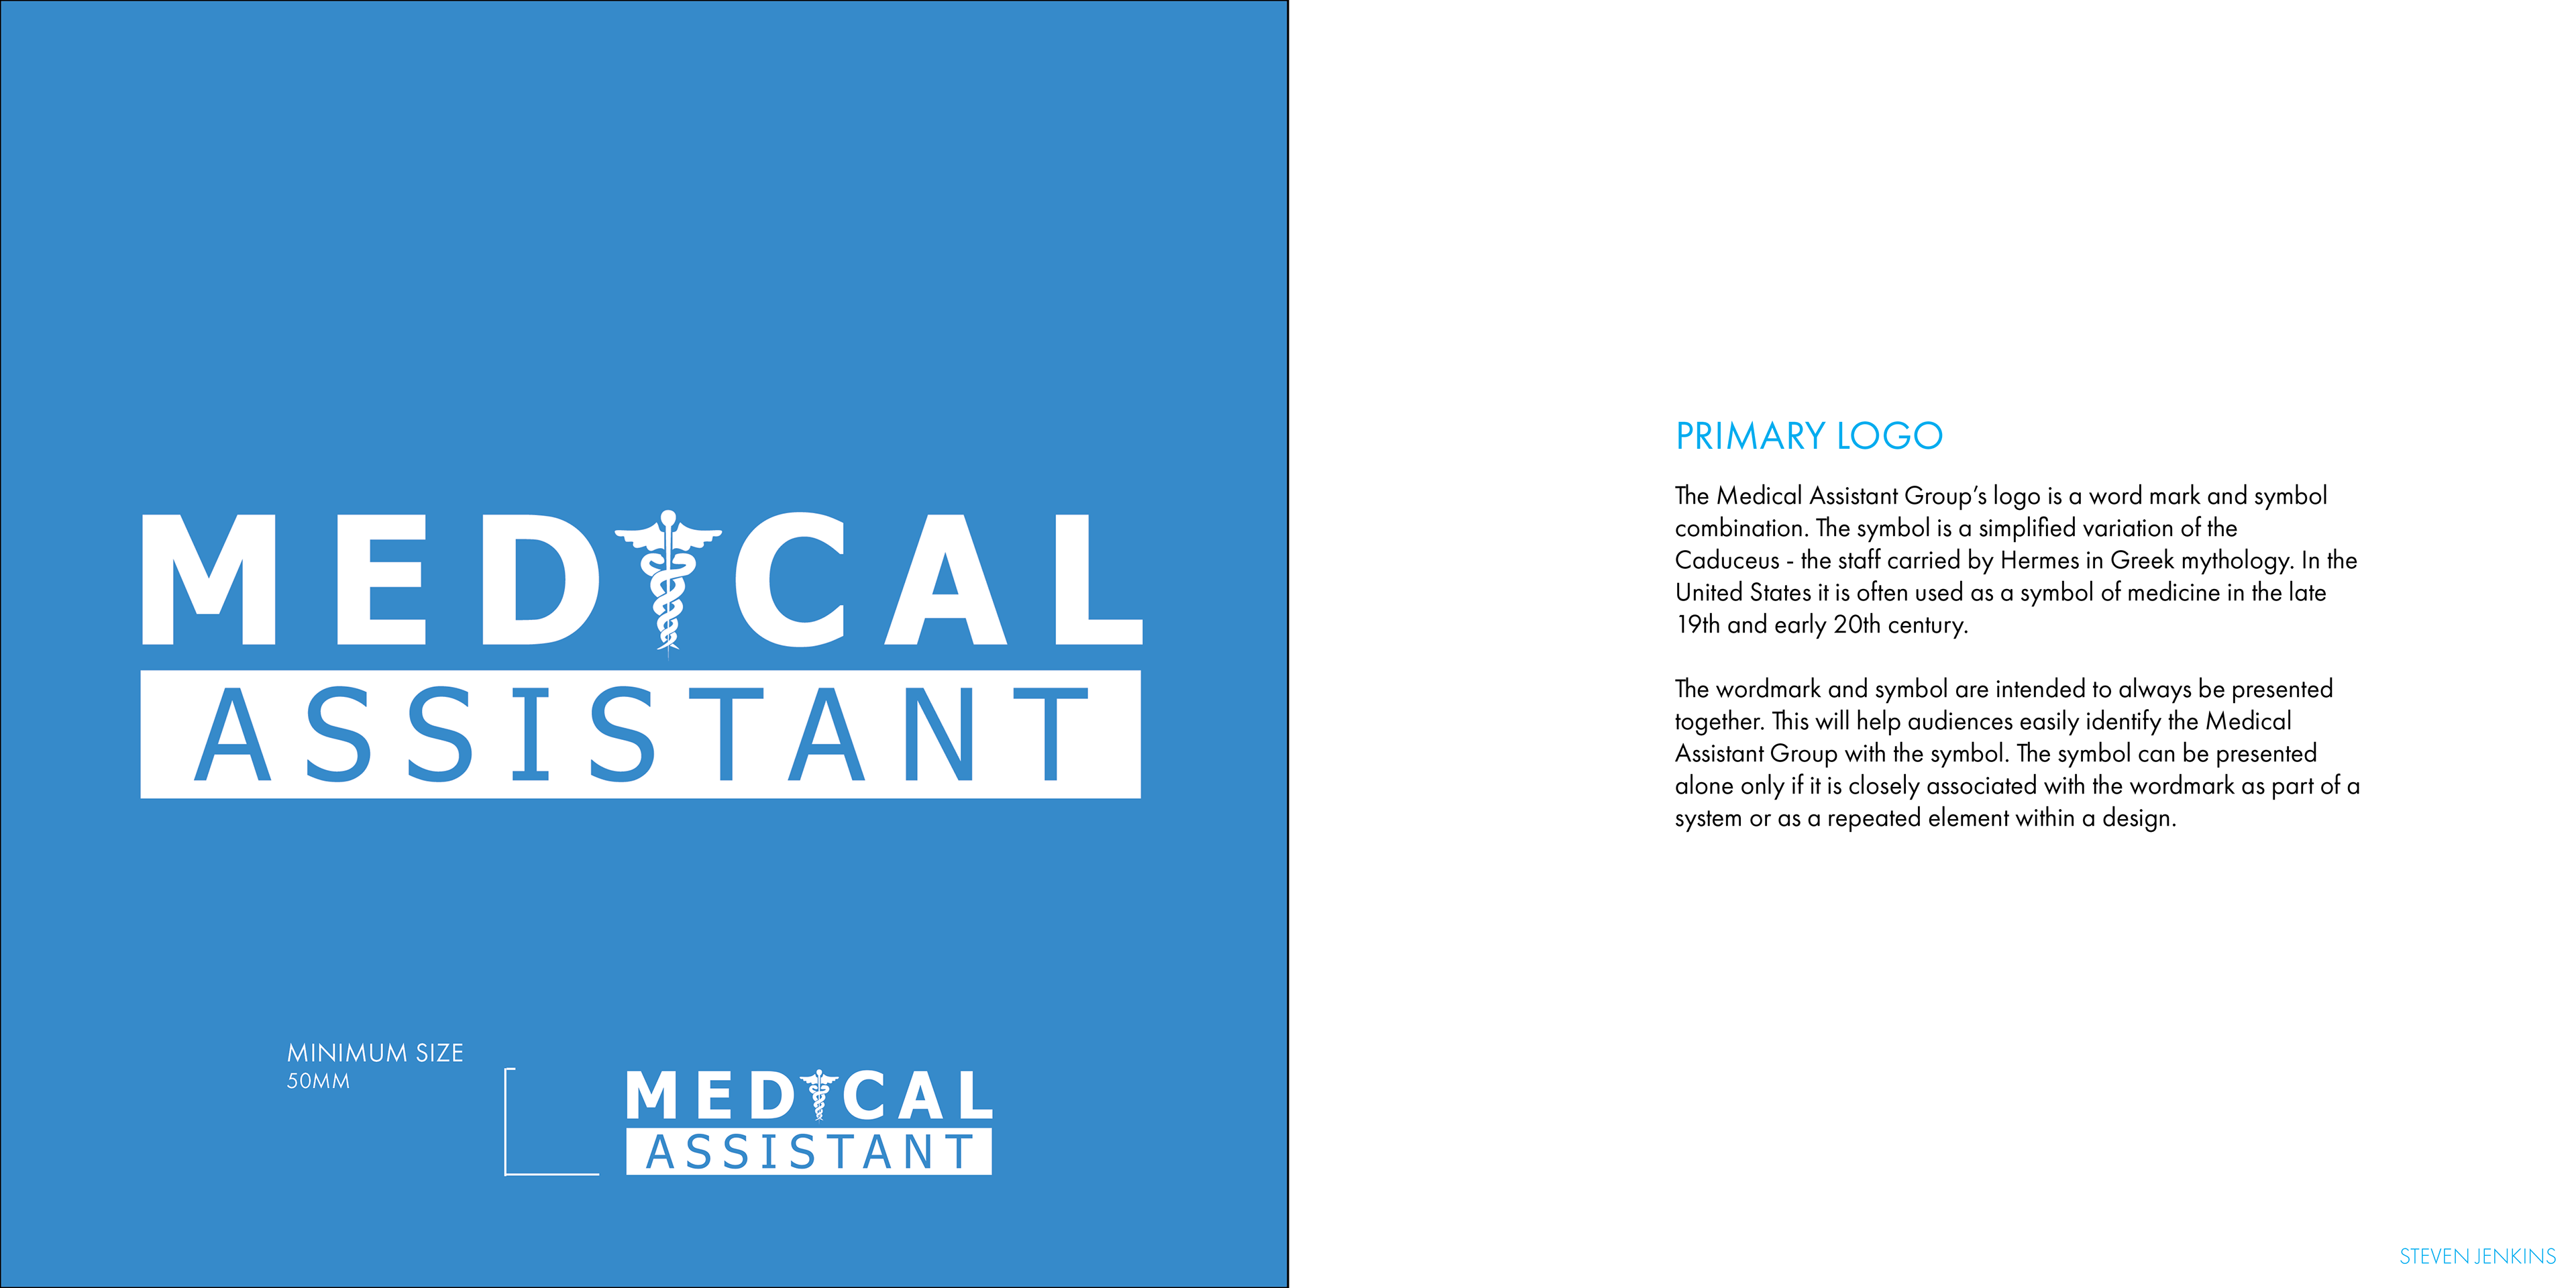 Medical Assistant Logo - Steven Jenkins - Medical Assistant Logo Design